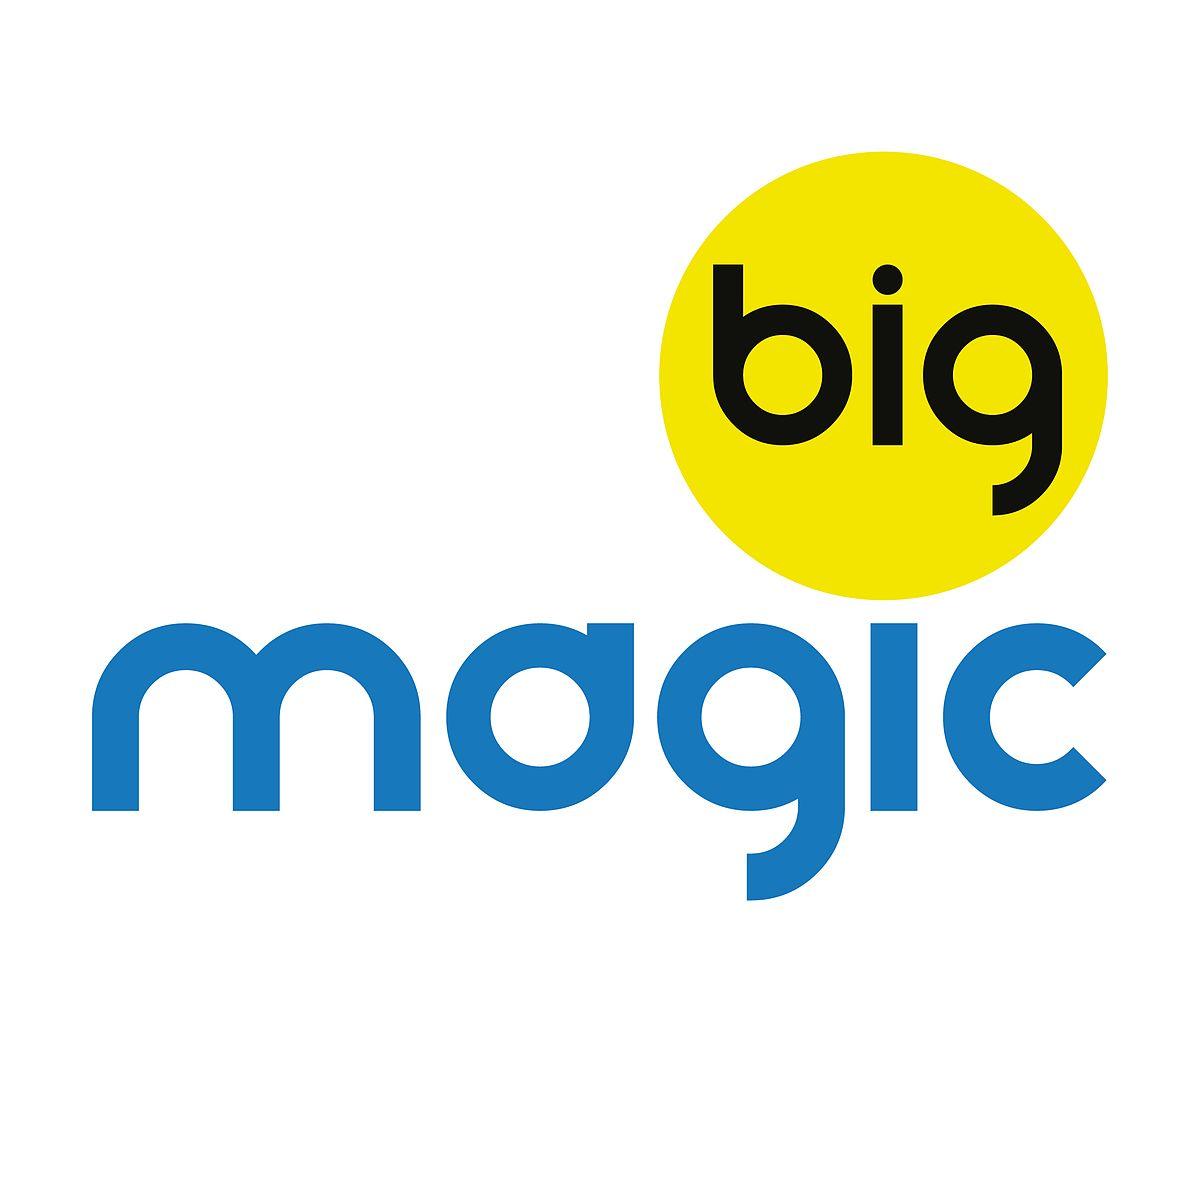 Magic Logo - Big Magic